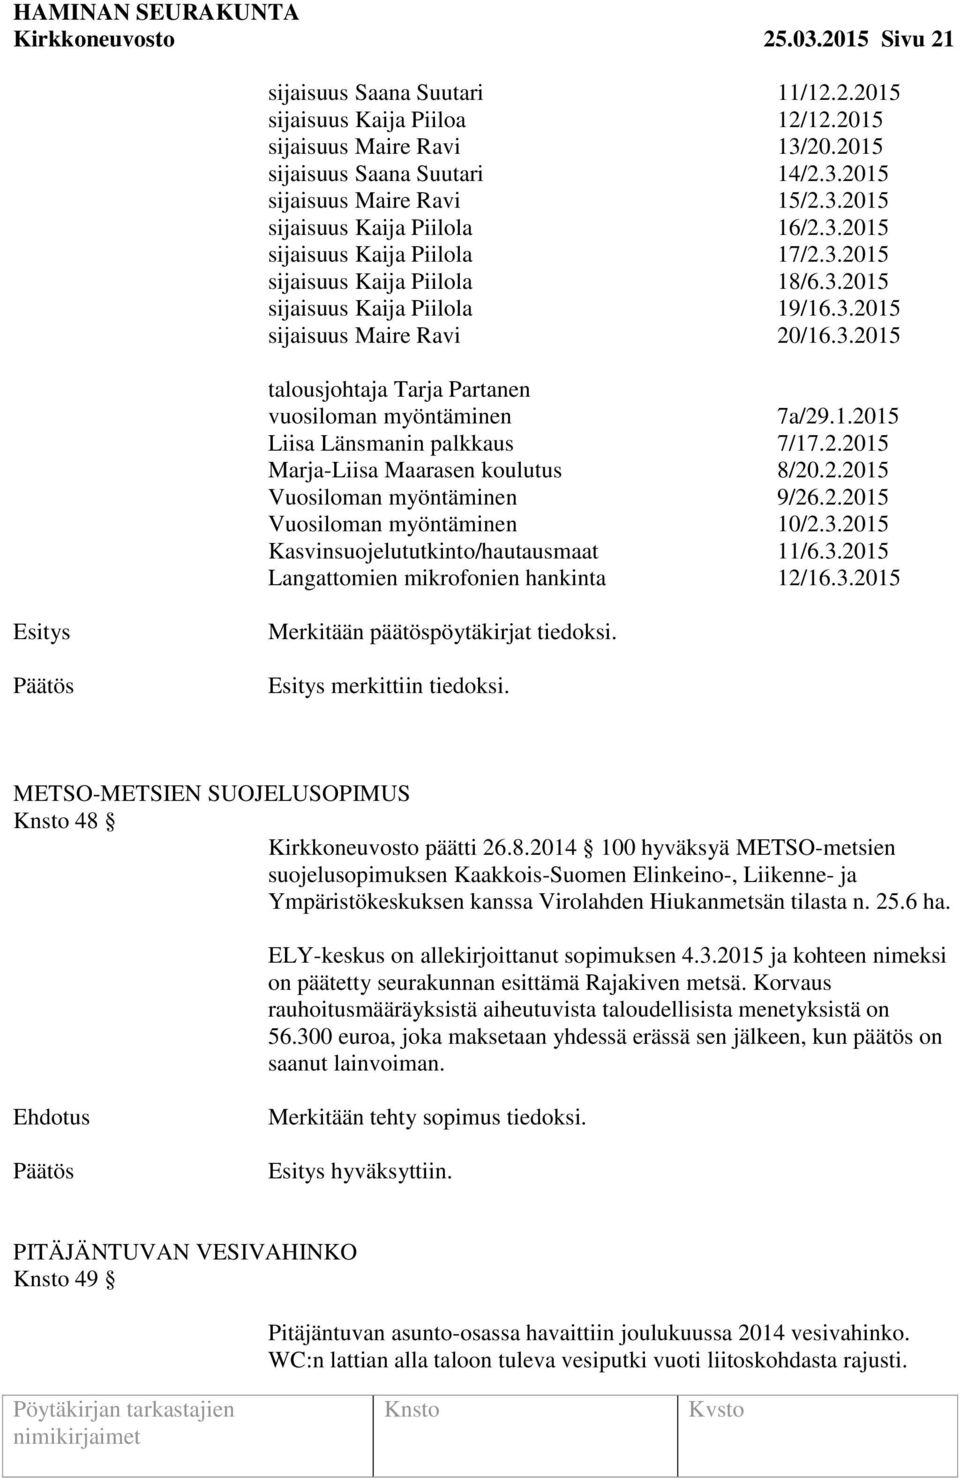 1.2015 Liisa Länsmanin palkkaus 7/17.2.2015 Marja-Liisa Maarasen koulutus 8/20.2.2015 Vuosiloman myöntäminen 9/26.2.2015 Vuosiloman myöntäminen 10/2.3.2015 Kasvinsuojelututkinto/hautausmaat 11/6.3.2015 Langattomien mikrofonien hankinta 12/16.